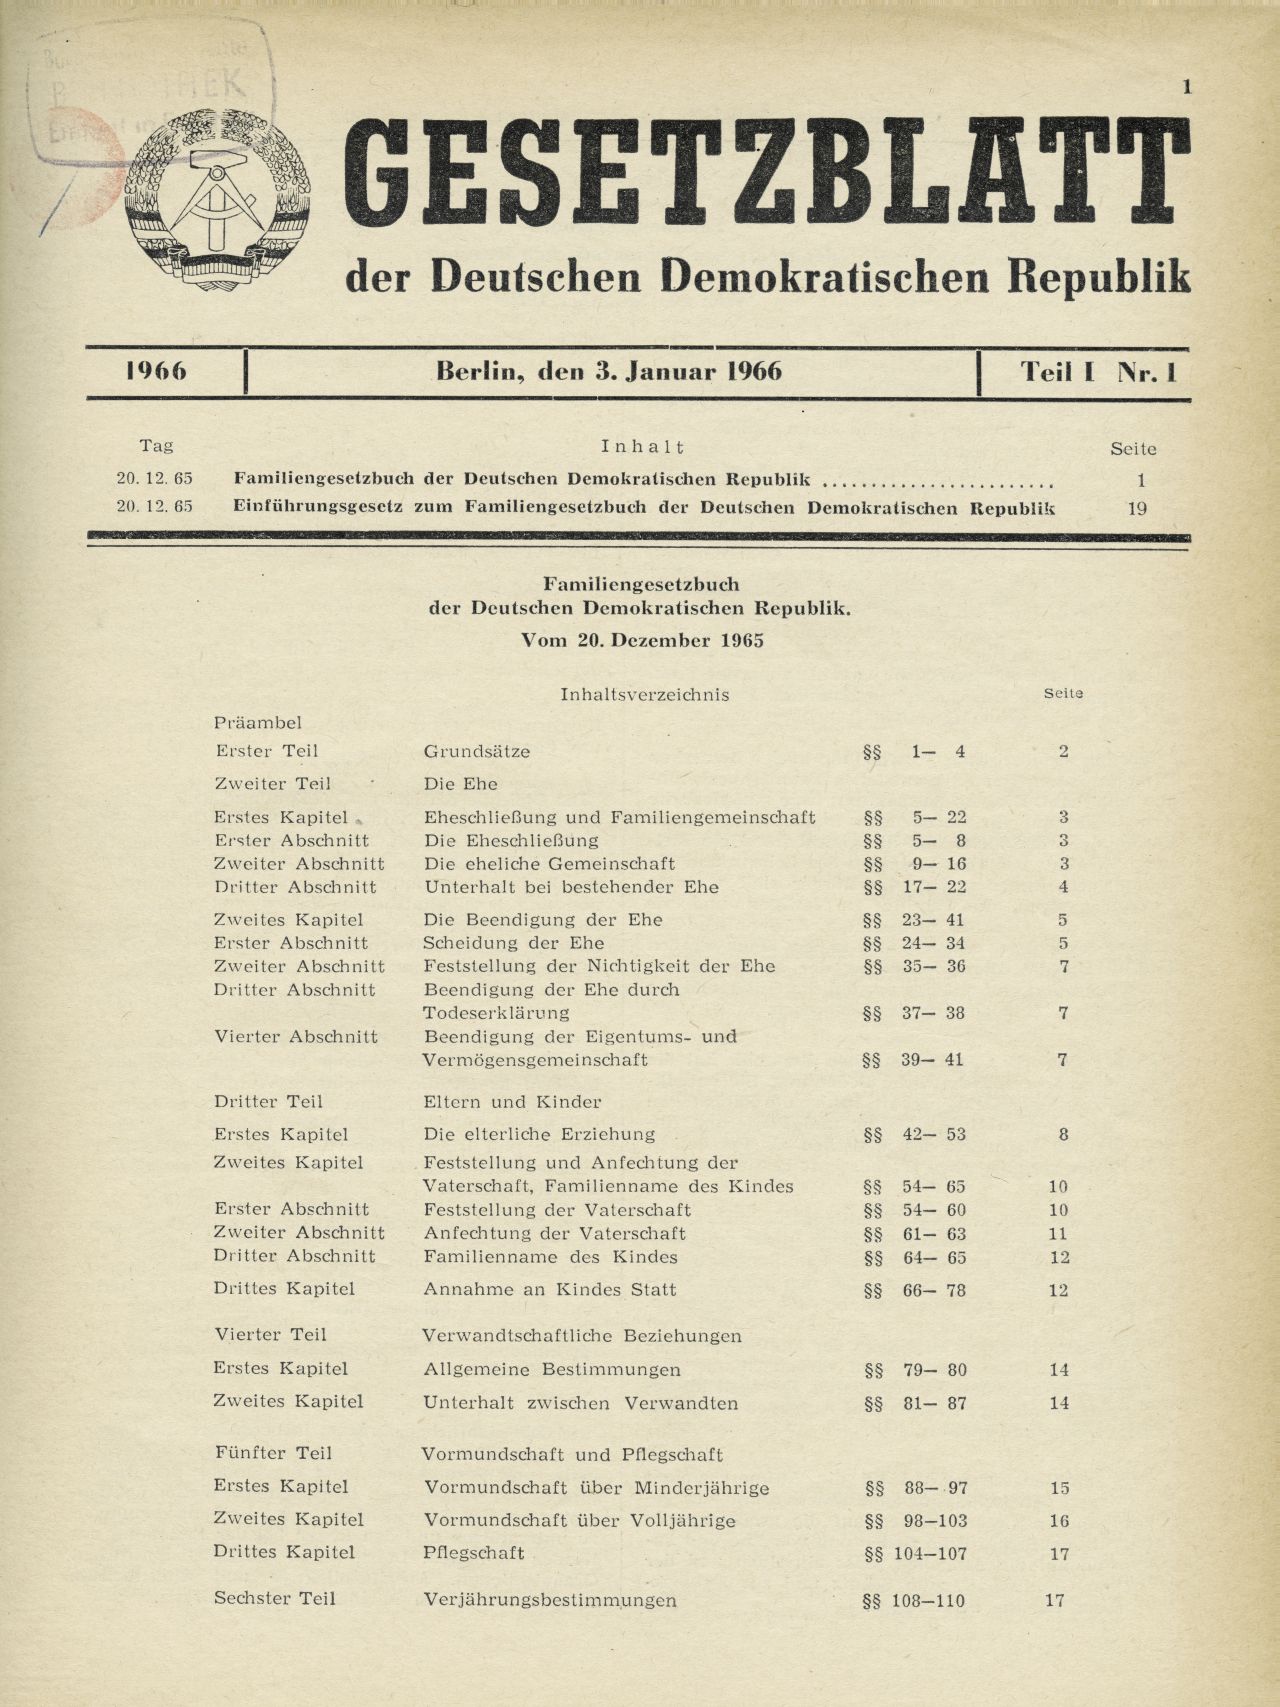 Inhaltsverzeichnis des Familiengesetzbuches der DDR.